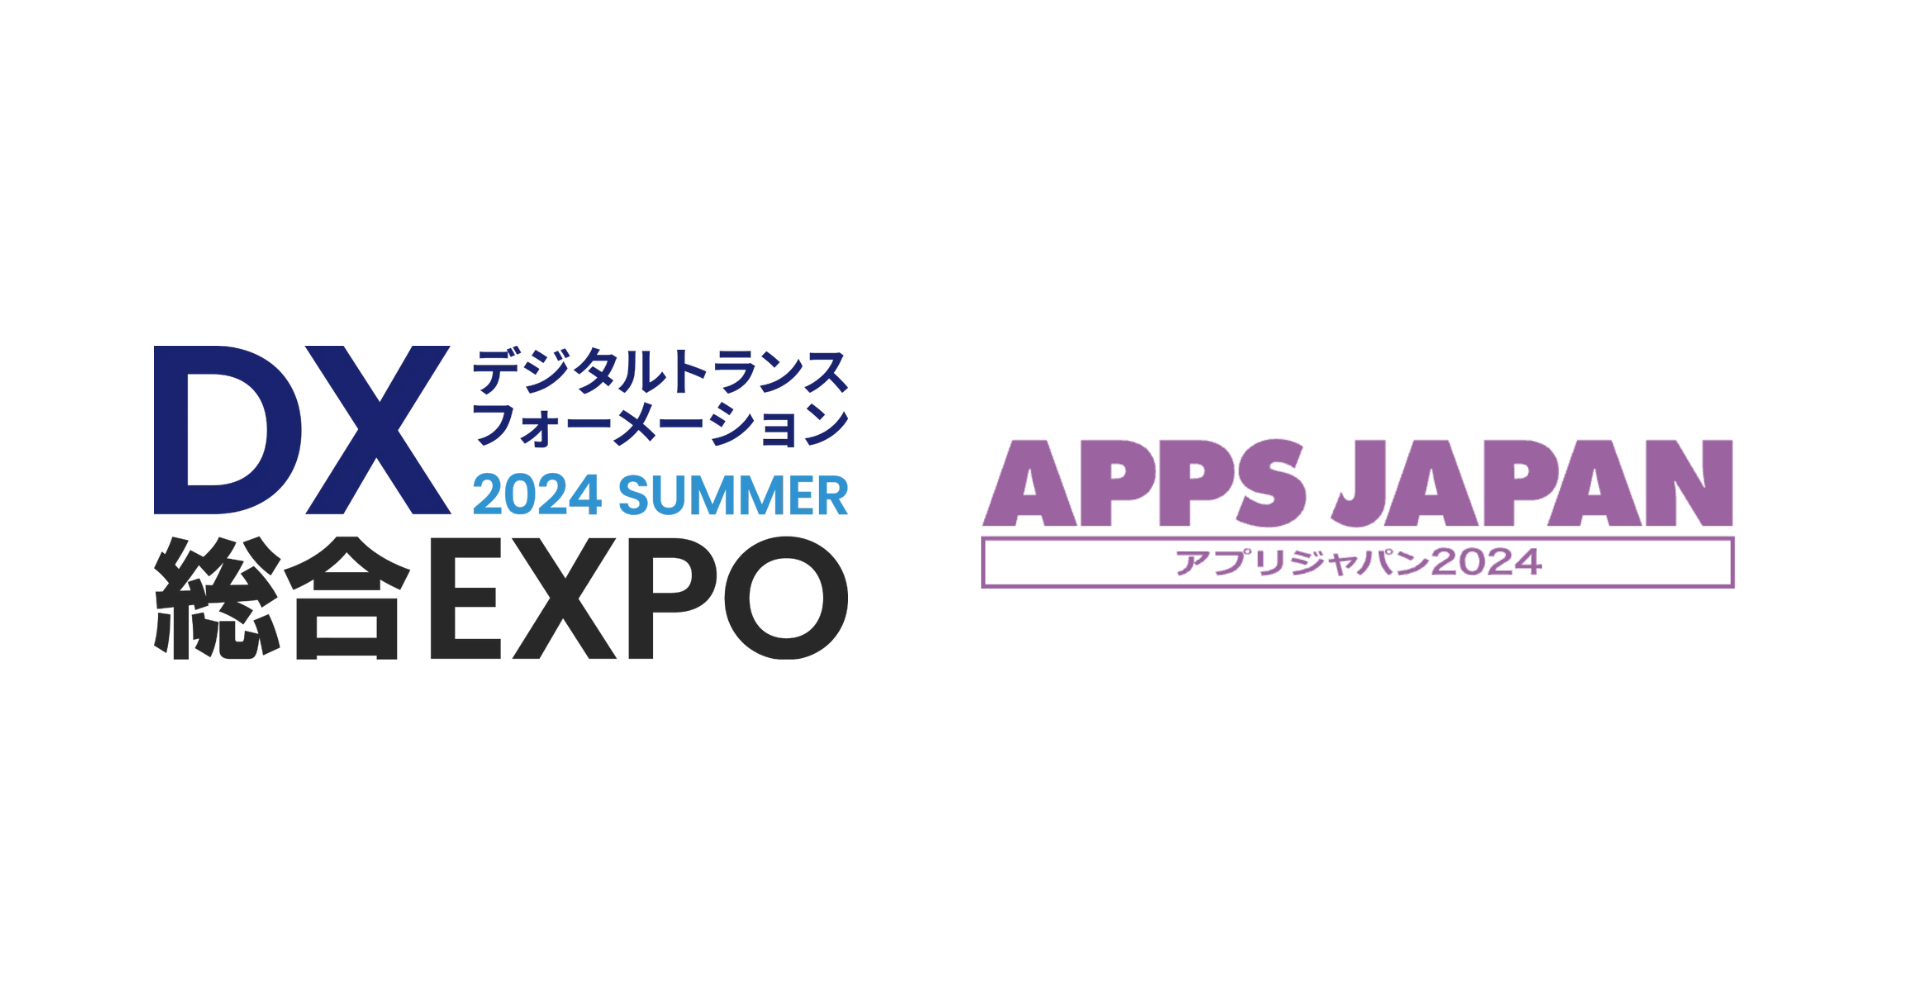 「DX 総合EXPO 2024  夏 東京」と「APPS JAPAN 2024」に出展。 AI開発エージェント「JITERA」や開発支援サービスの事例を紹介